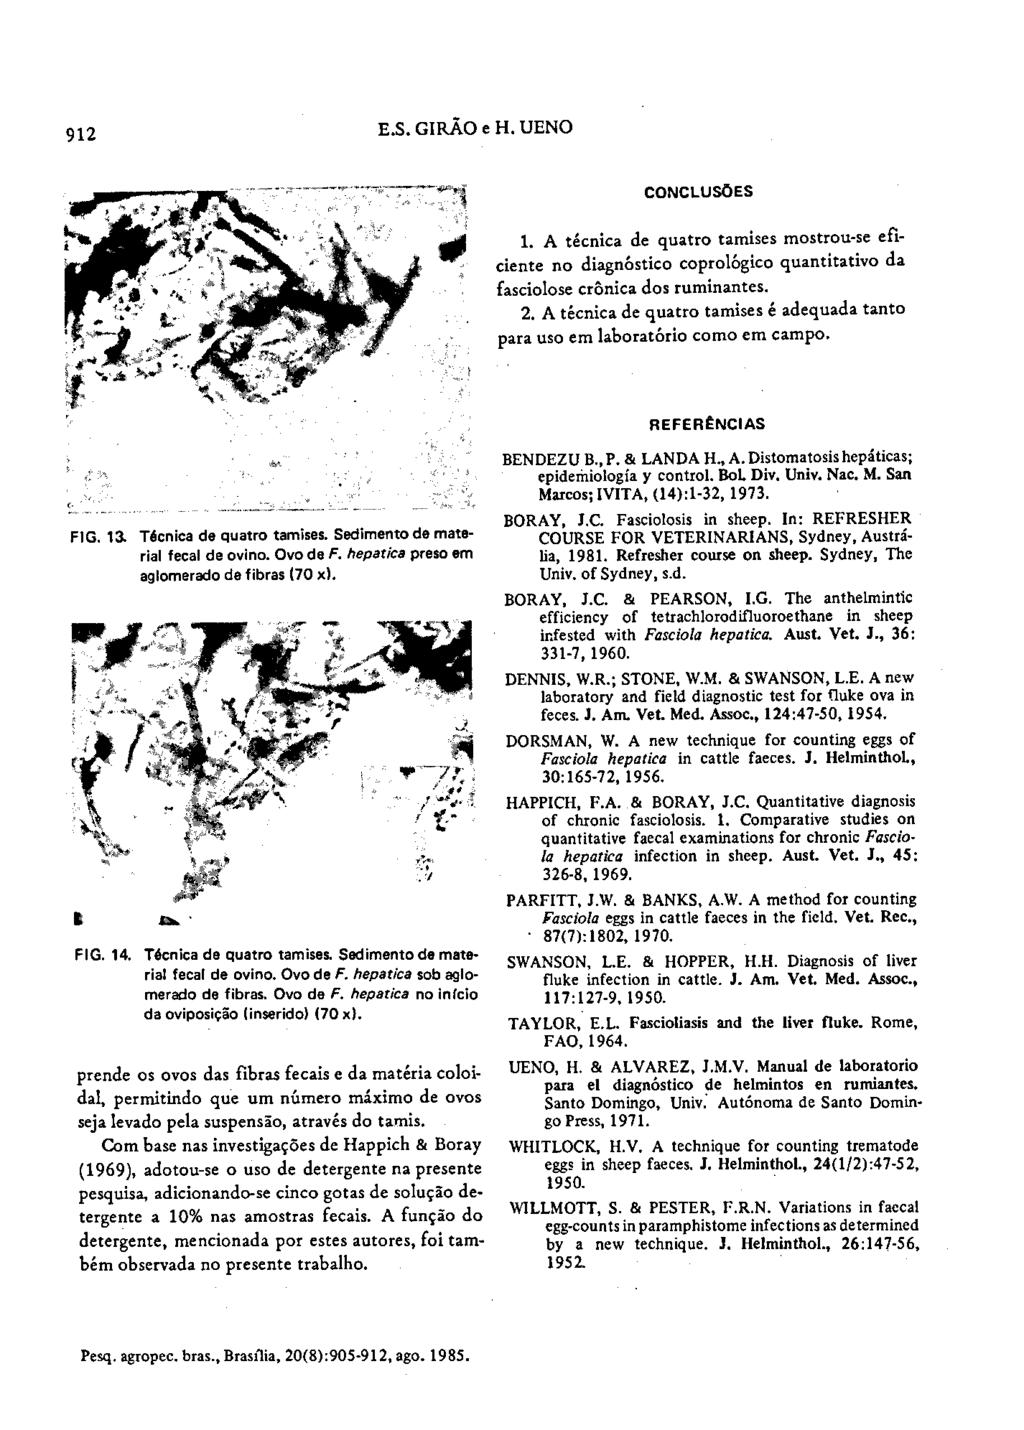 912 E.S.GIRÃO e H. UENO CONCLUSÕES 1. A técnica de quatro tamises mostrou-se eficiente no diagnóstico coprológico quantitativo da fasciolose crônica dos ruminantes. 2.